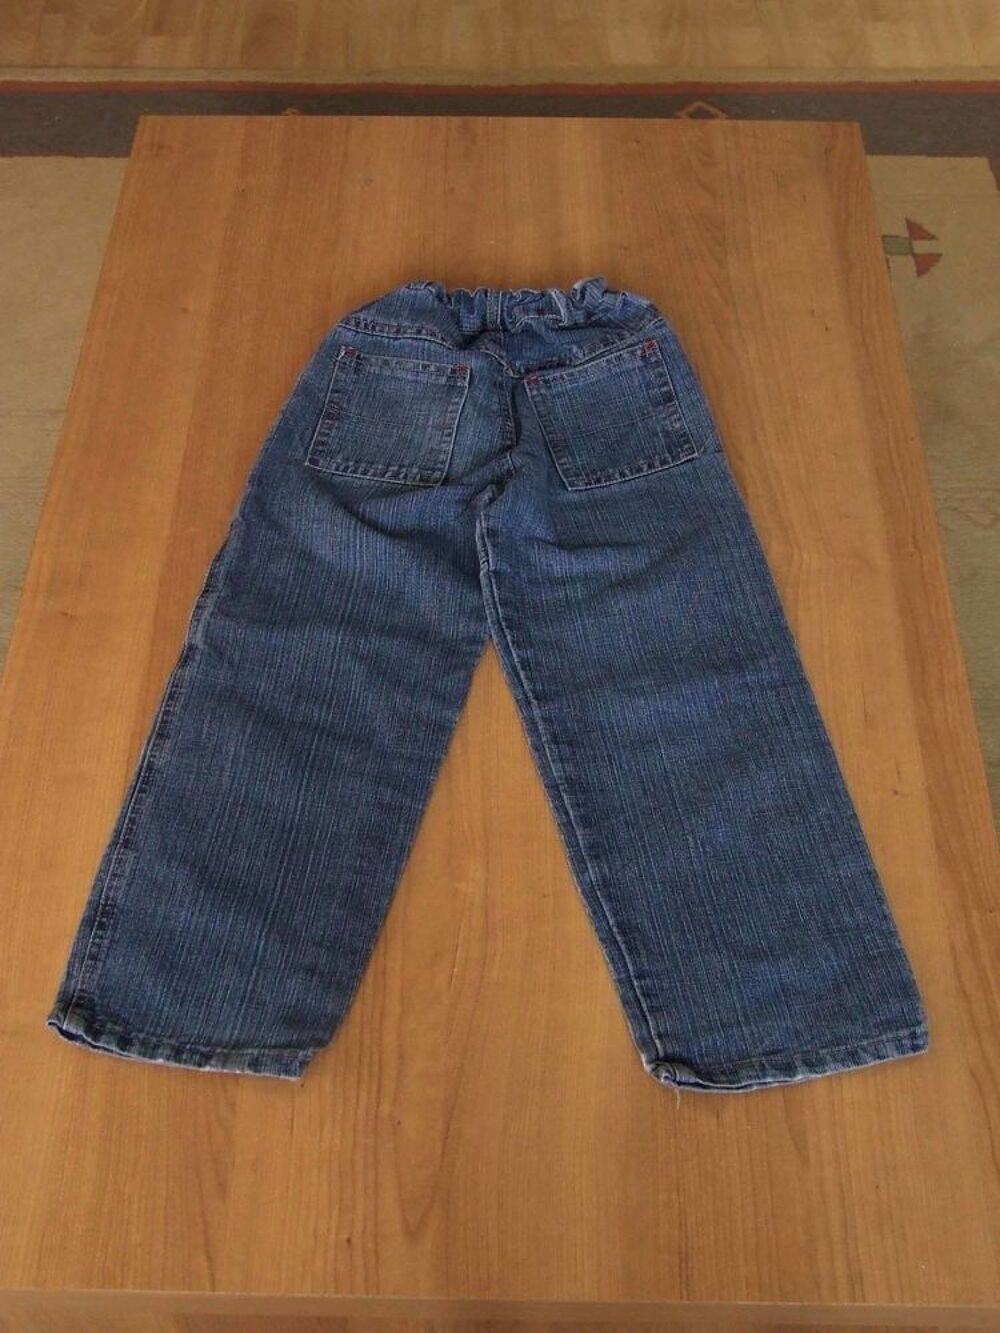 Jeans taille ajustable, style Baggy, Bleu d&eacute;lav&eacute;, 8&nbsp;ans Vtements enfants